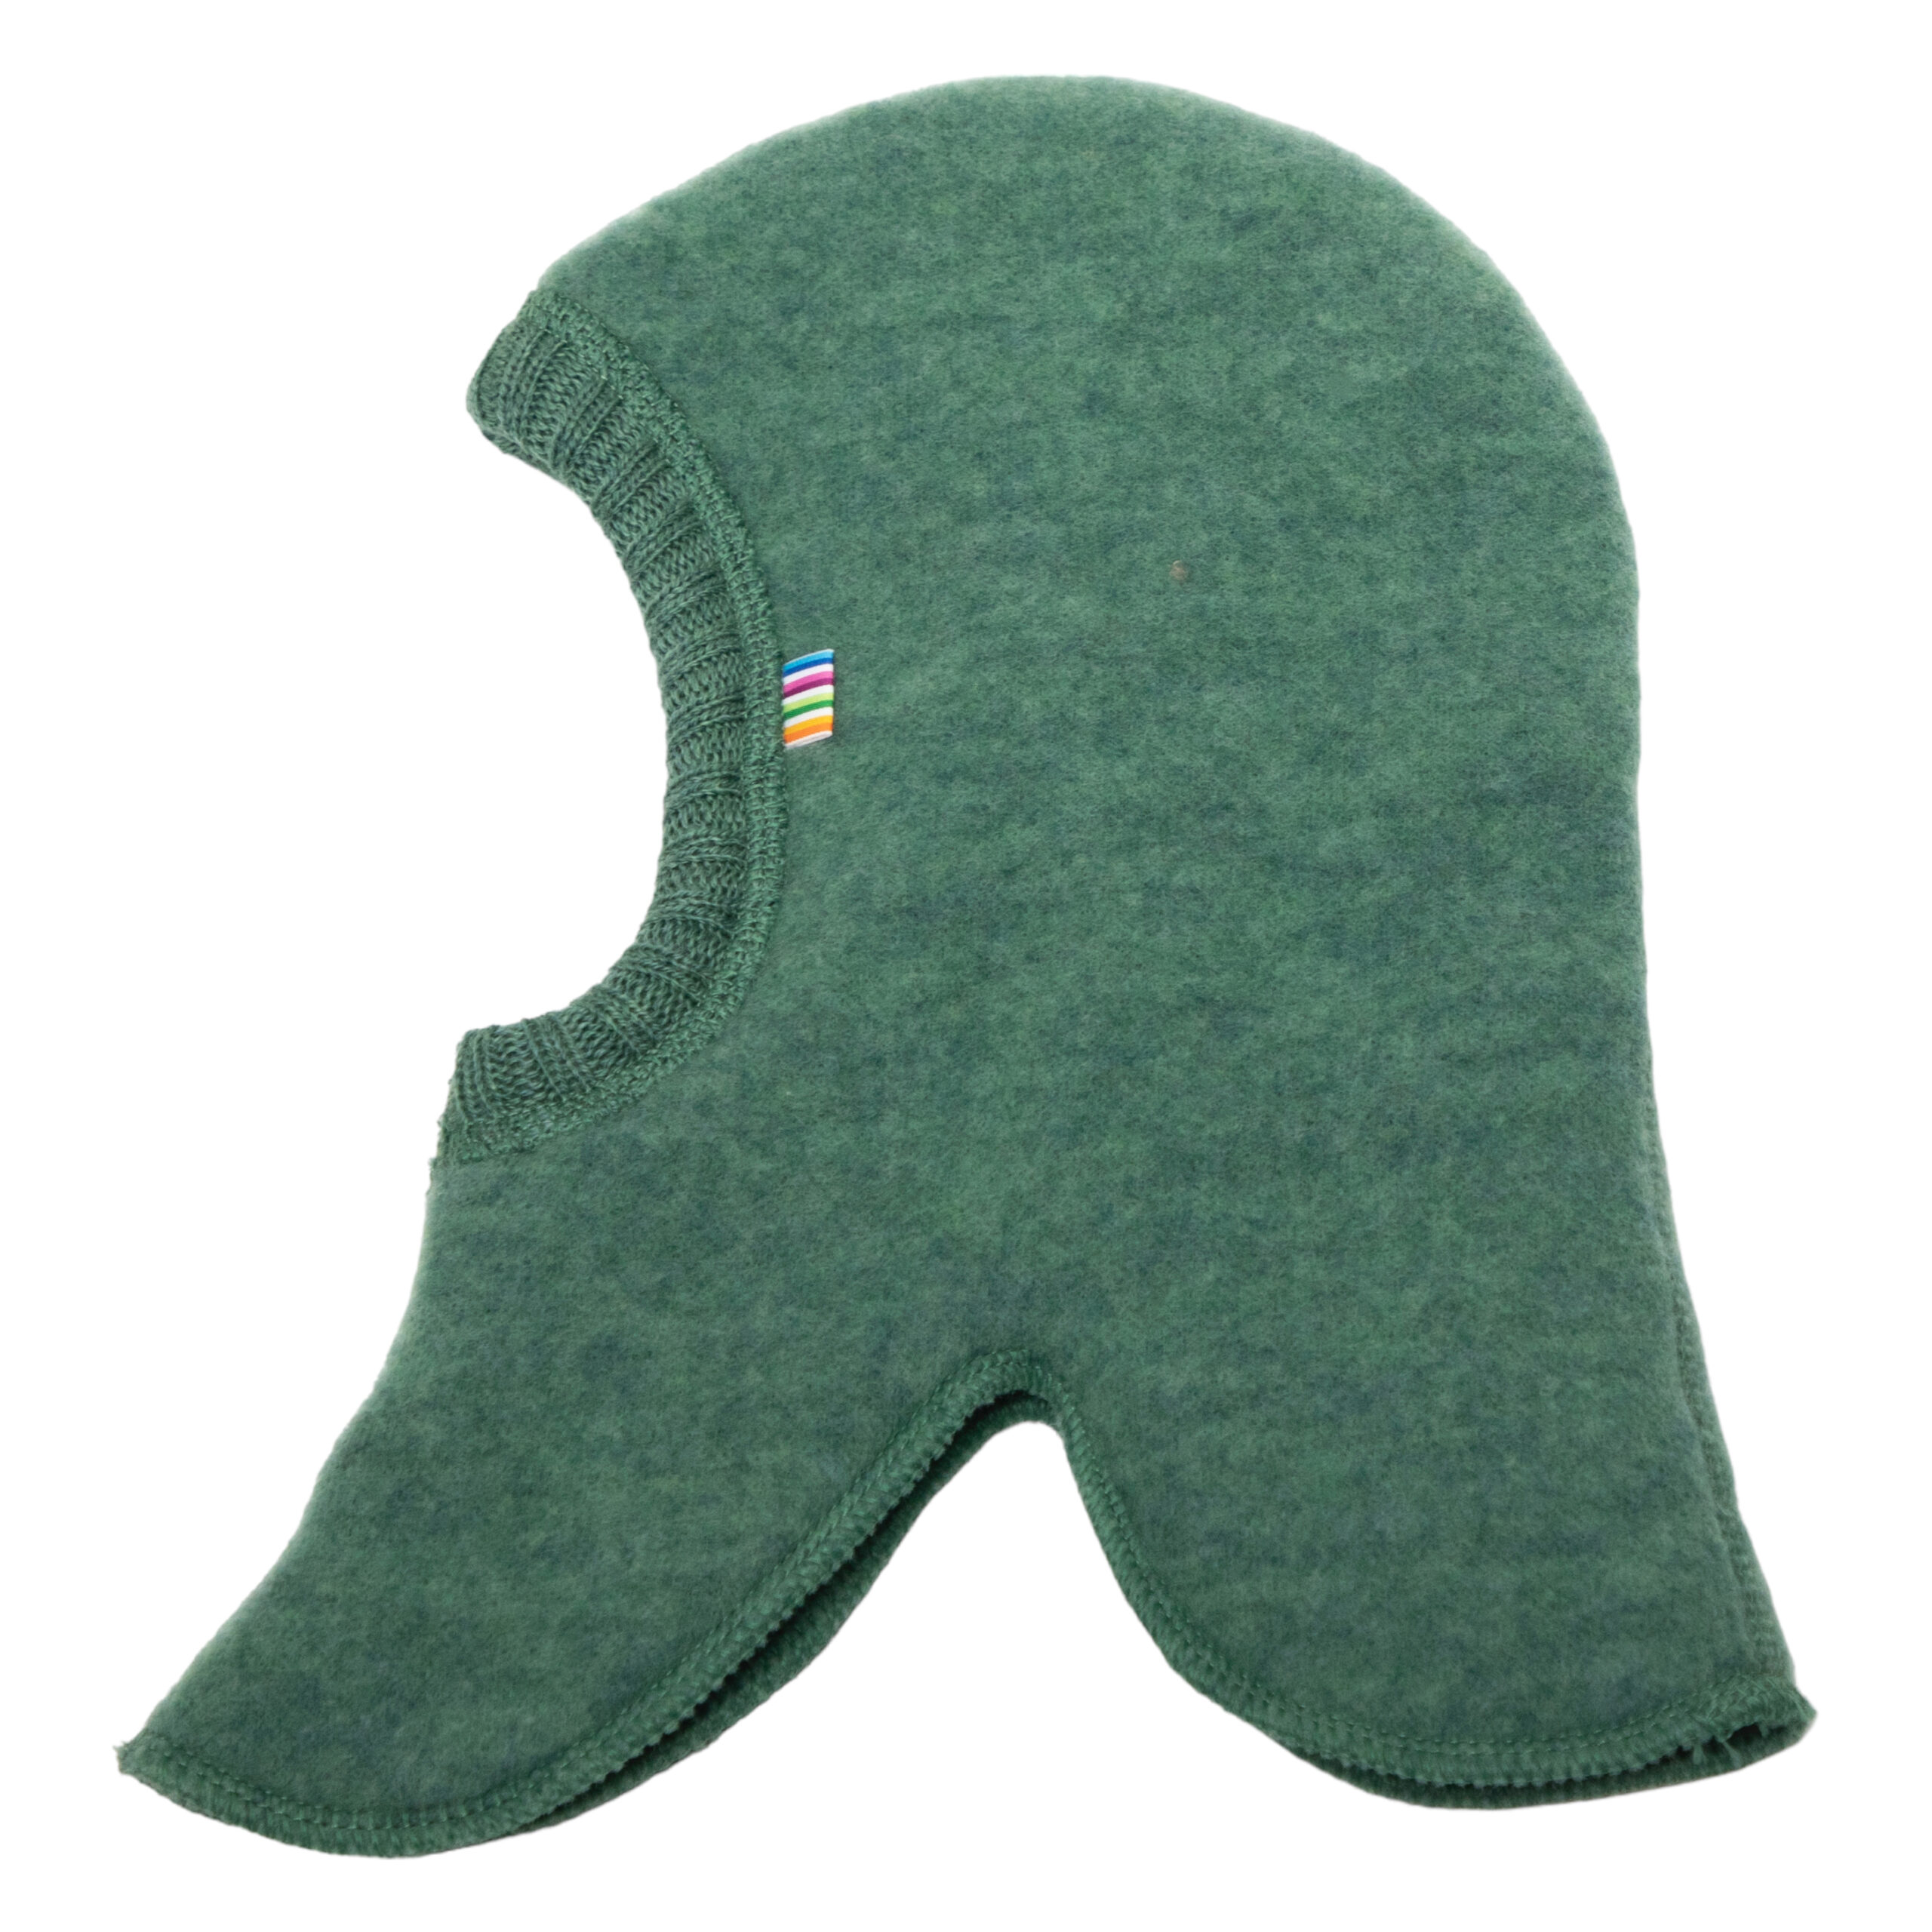 Joha Special Edition, meriinofliisist paks tuukrimüts, Green Villariided - HellyK - Kvaliteetsed lasteriided, villariided, barefoot jalatsid